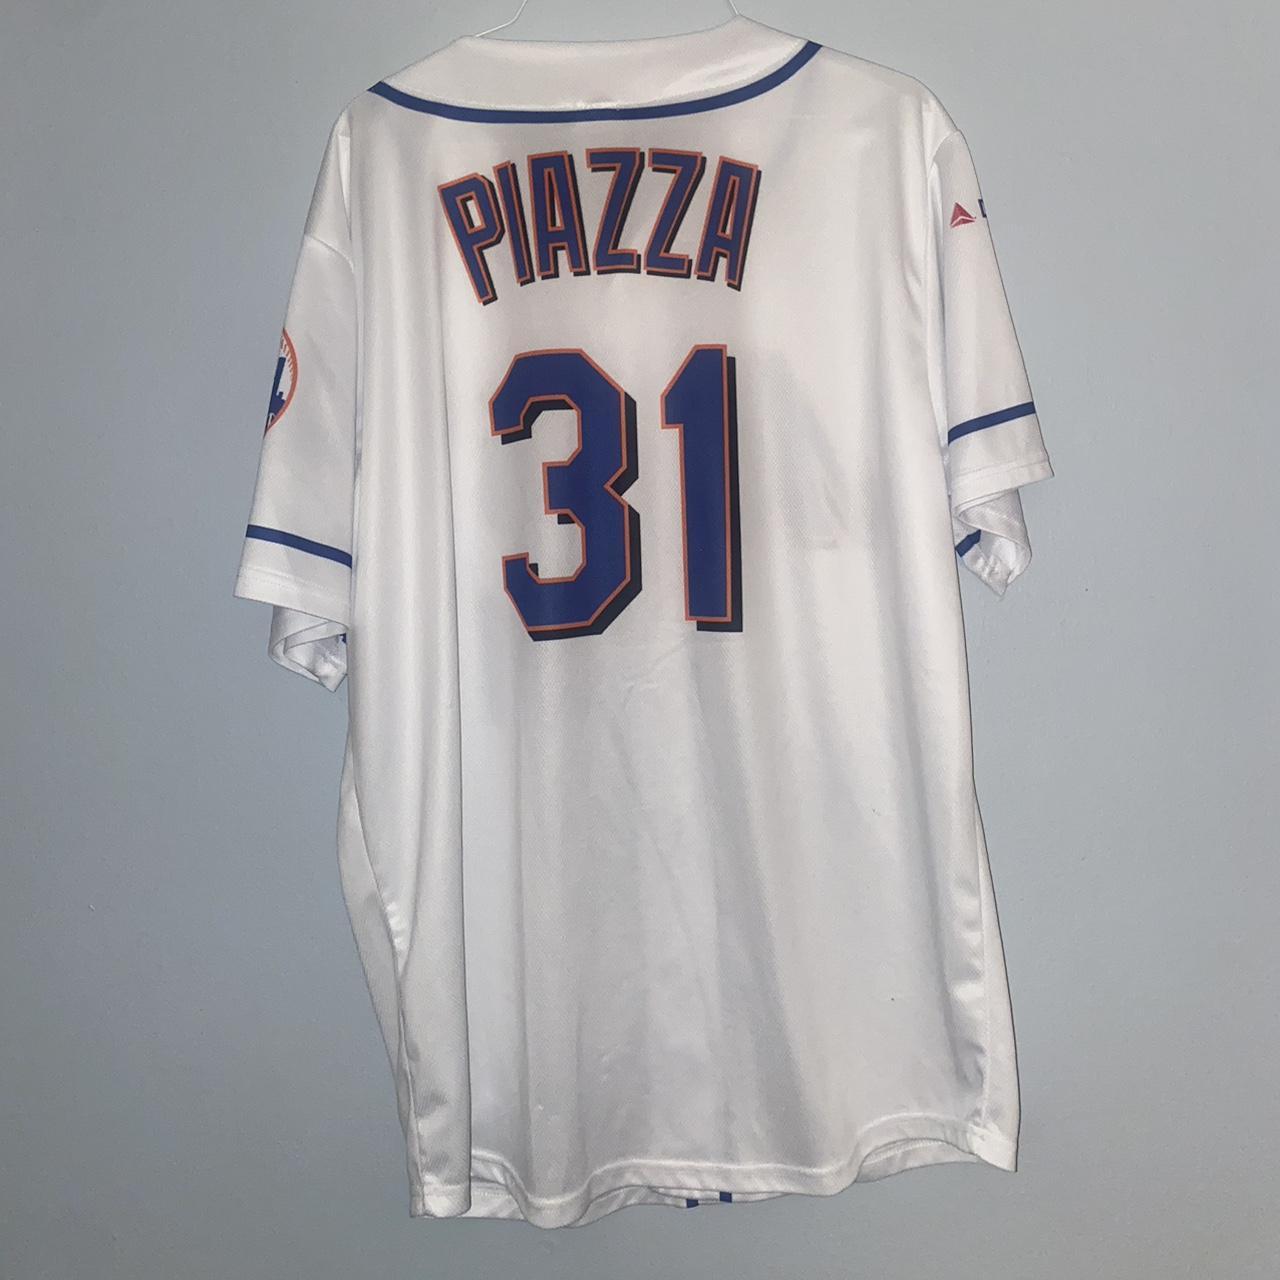 Vintage Nike Team MLB New York Mets Mike Piazza - Depop